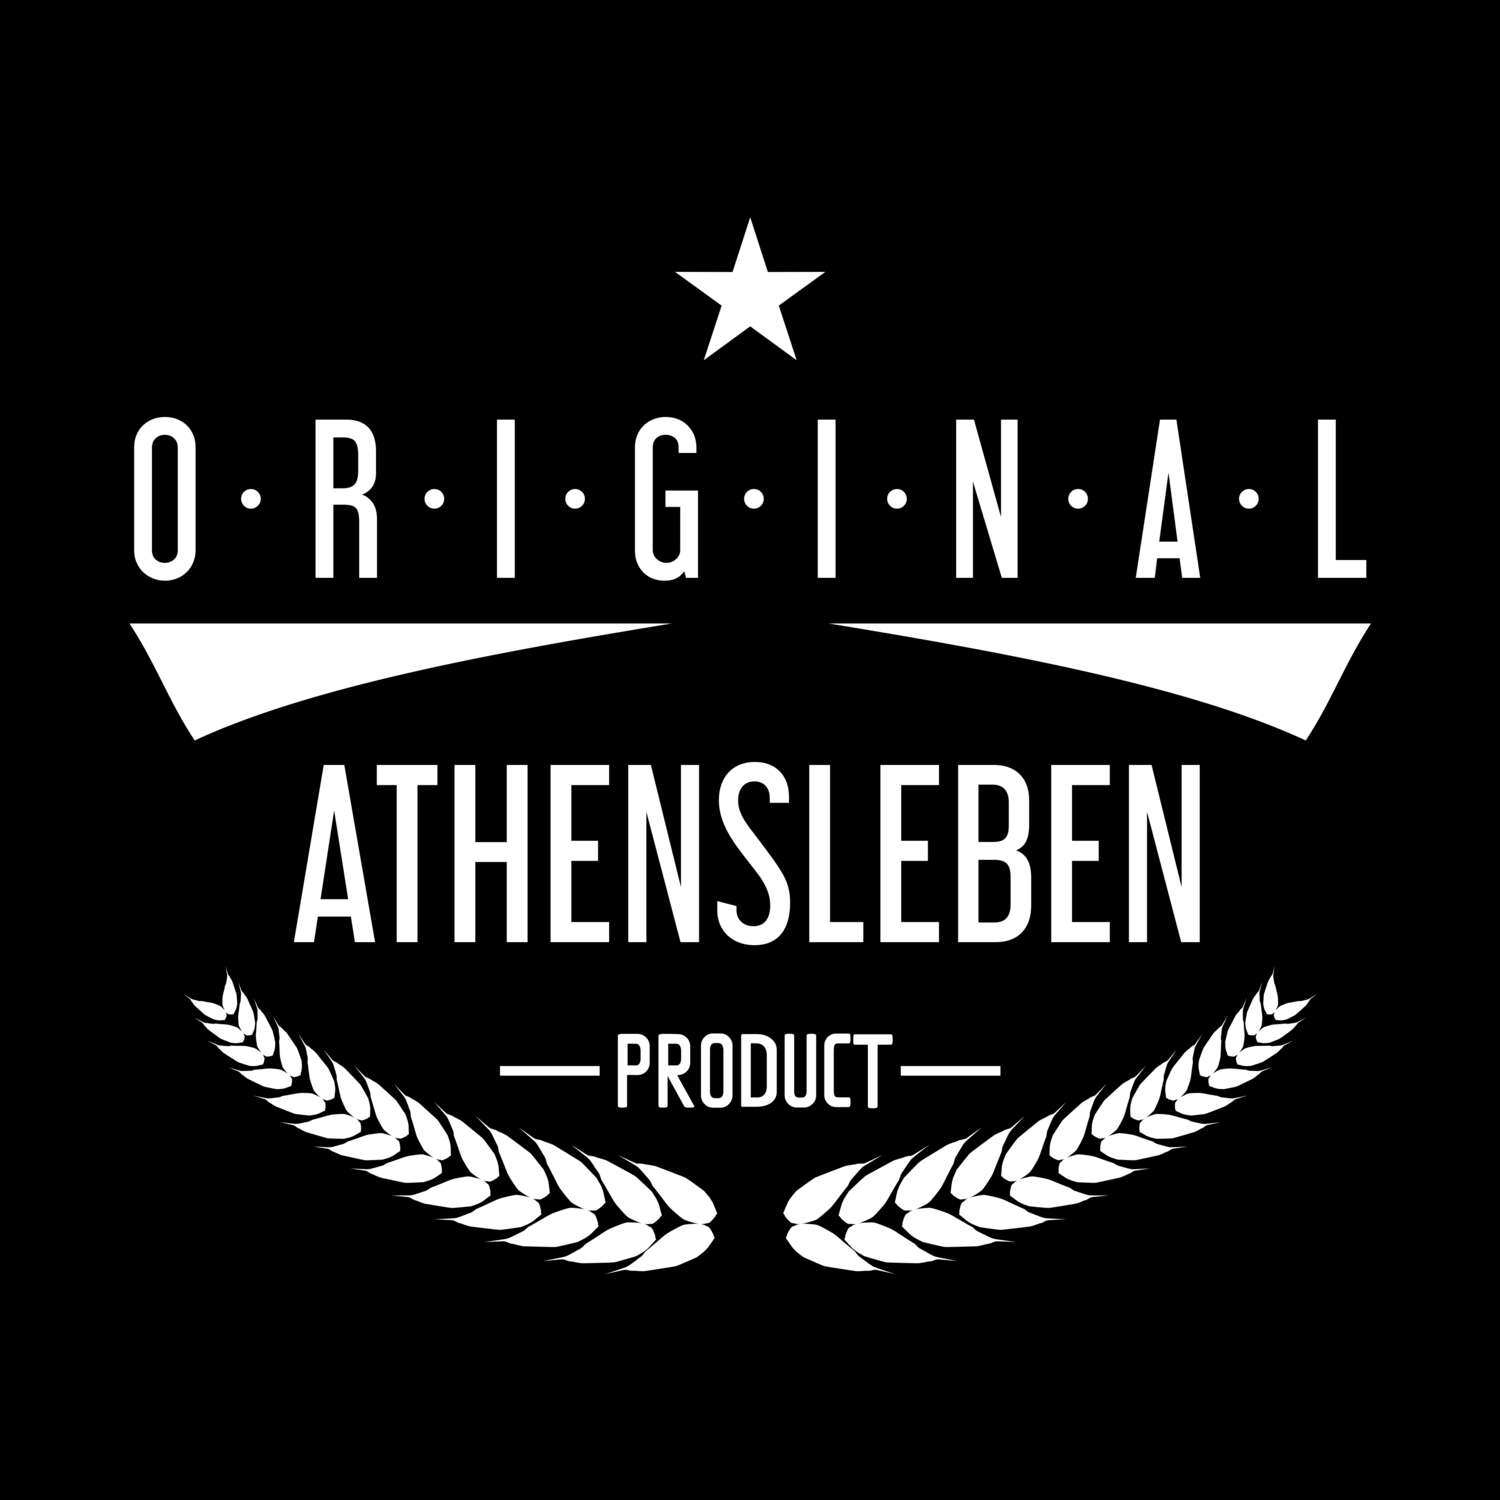 Athensleben T-Shirt »Original Product«